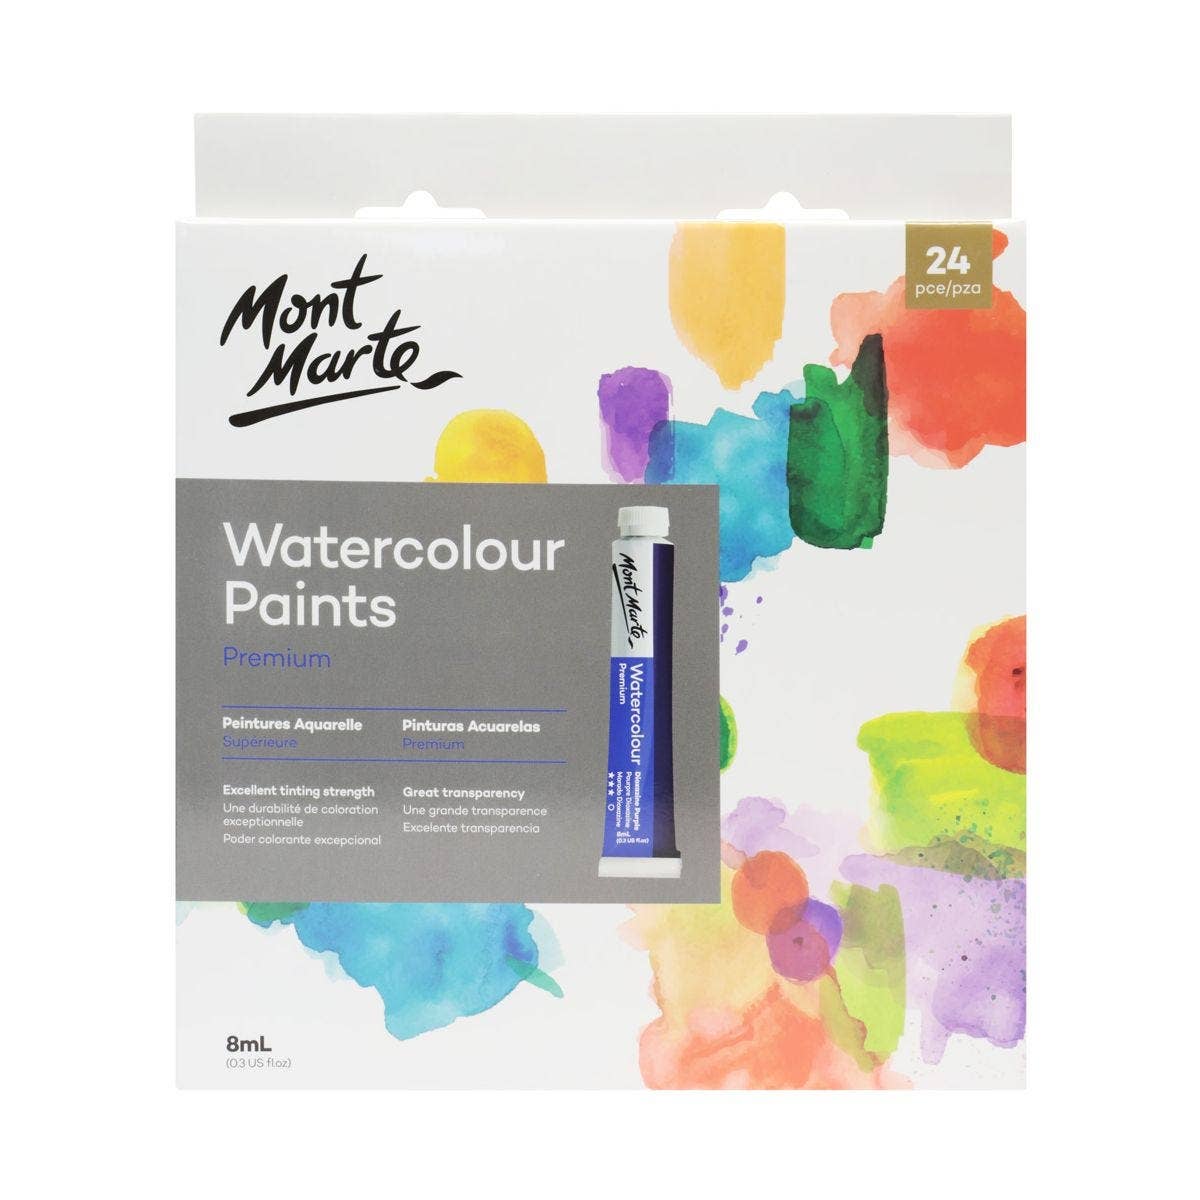 Mont Marte Watercolor Paints Premium 24 pc.